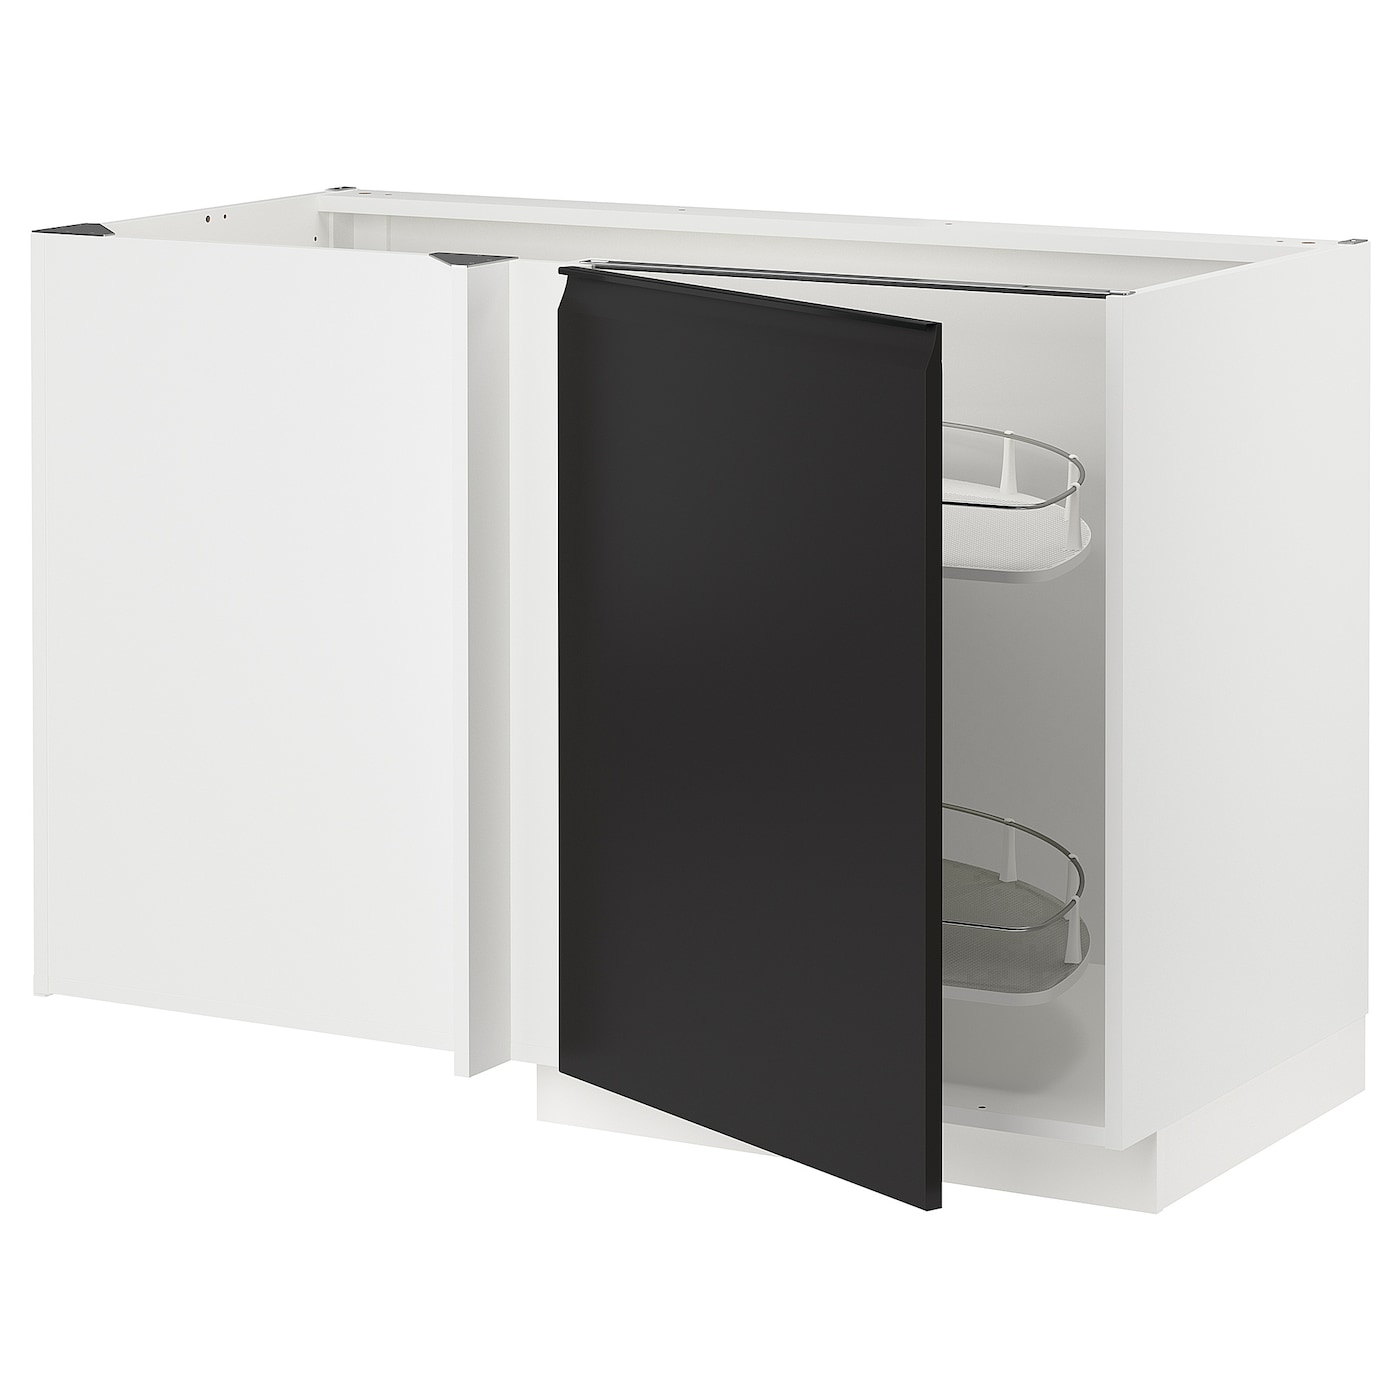 Напольный шкаф - IKEA METOD, 88x67,5x127,5см, белый/черный, МЕТОД ИКЕА